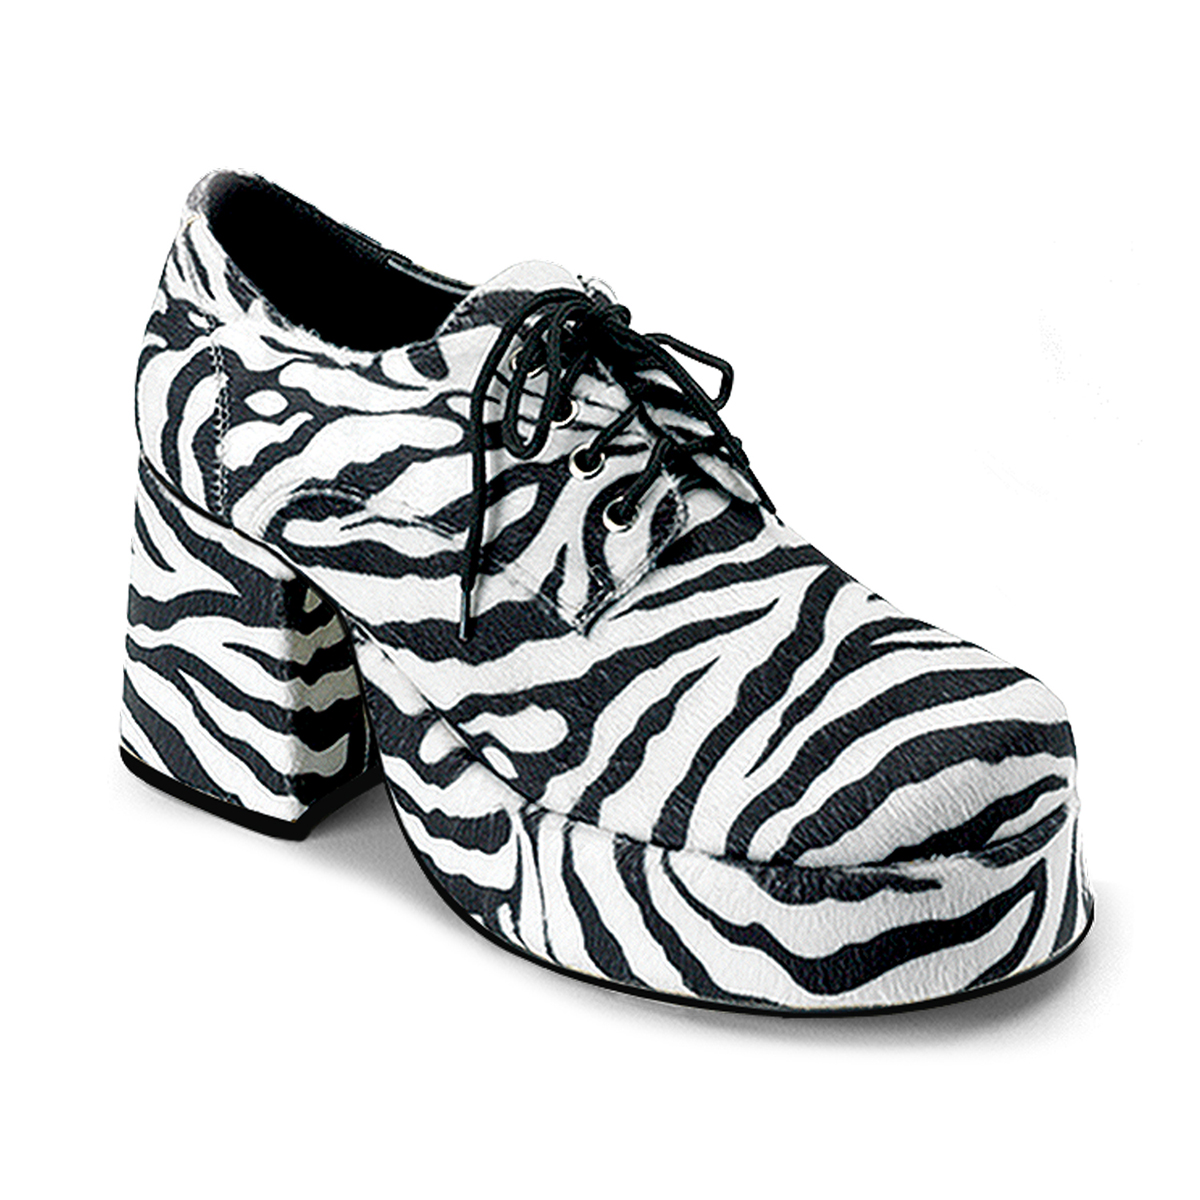 Afname Verplicht verdund Men Platform Shoes JAZZ-02 - Zebra, Funtasma